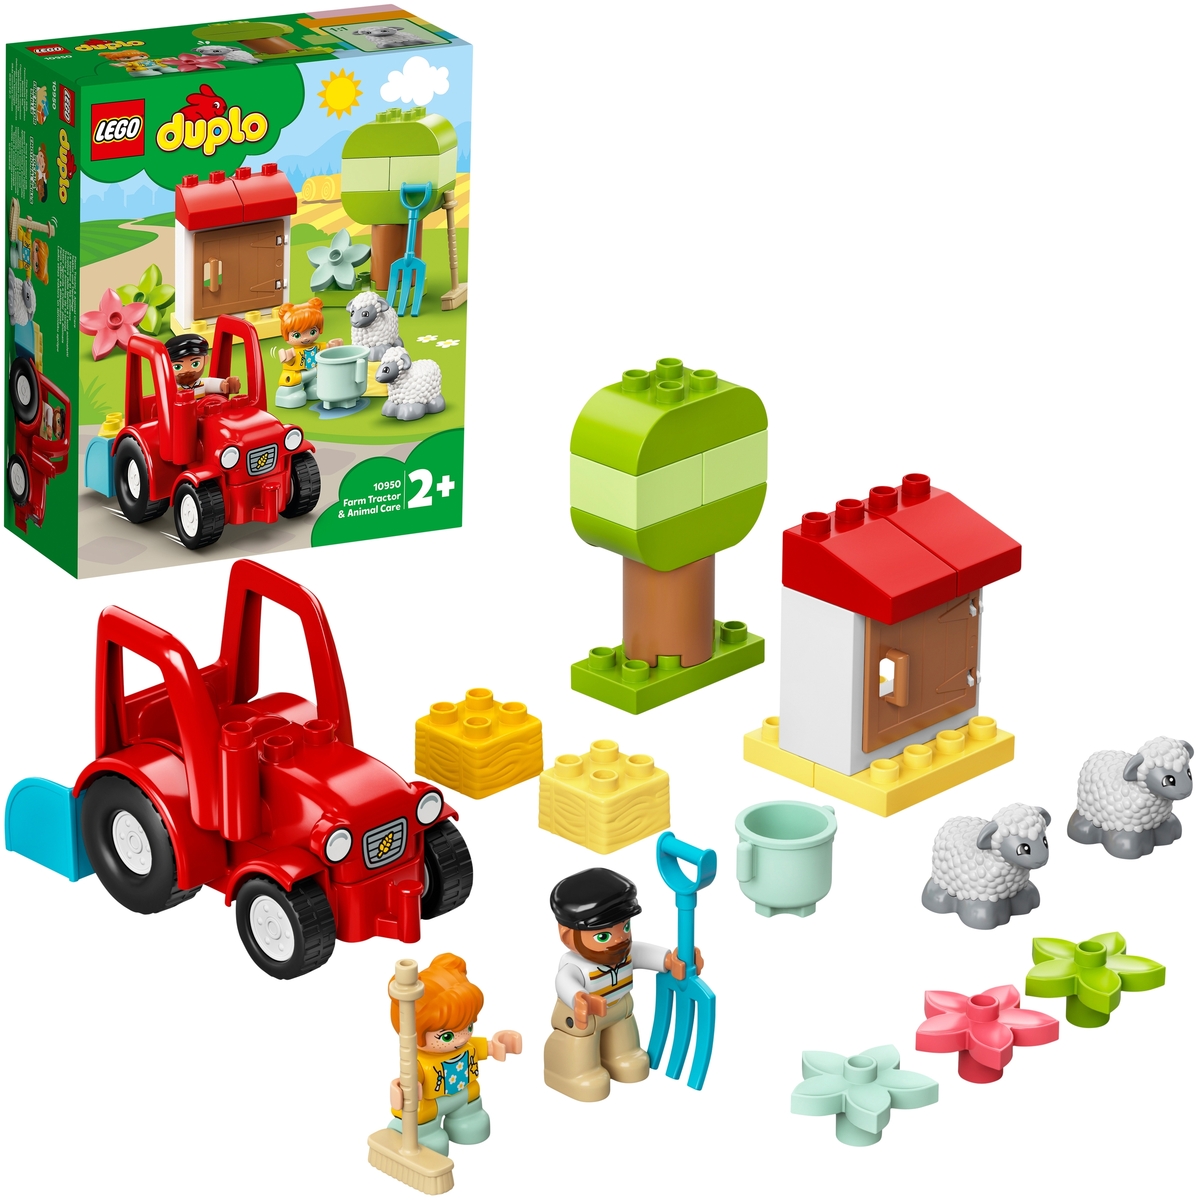 Фотография Конструктор LEGO 10950 Дупло Фермерский трактор и животные